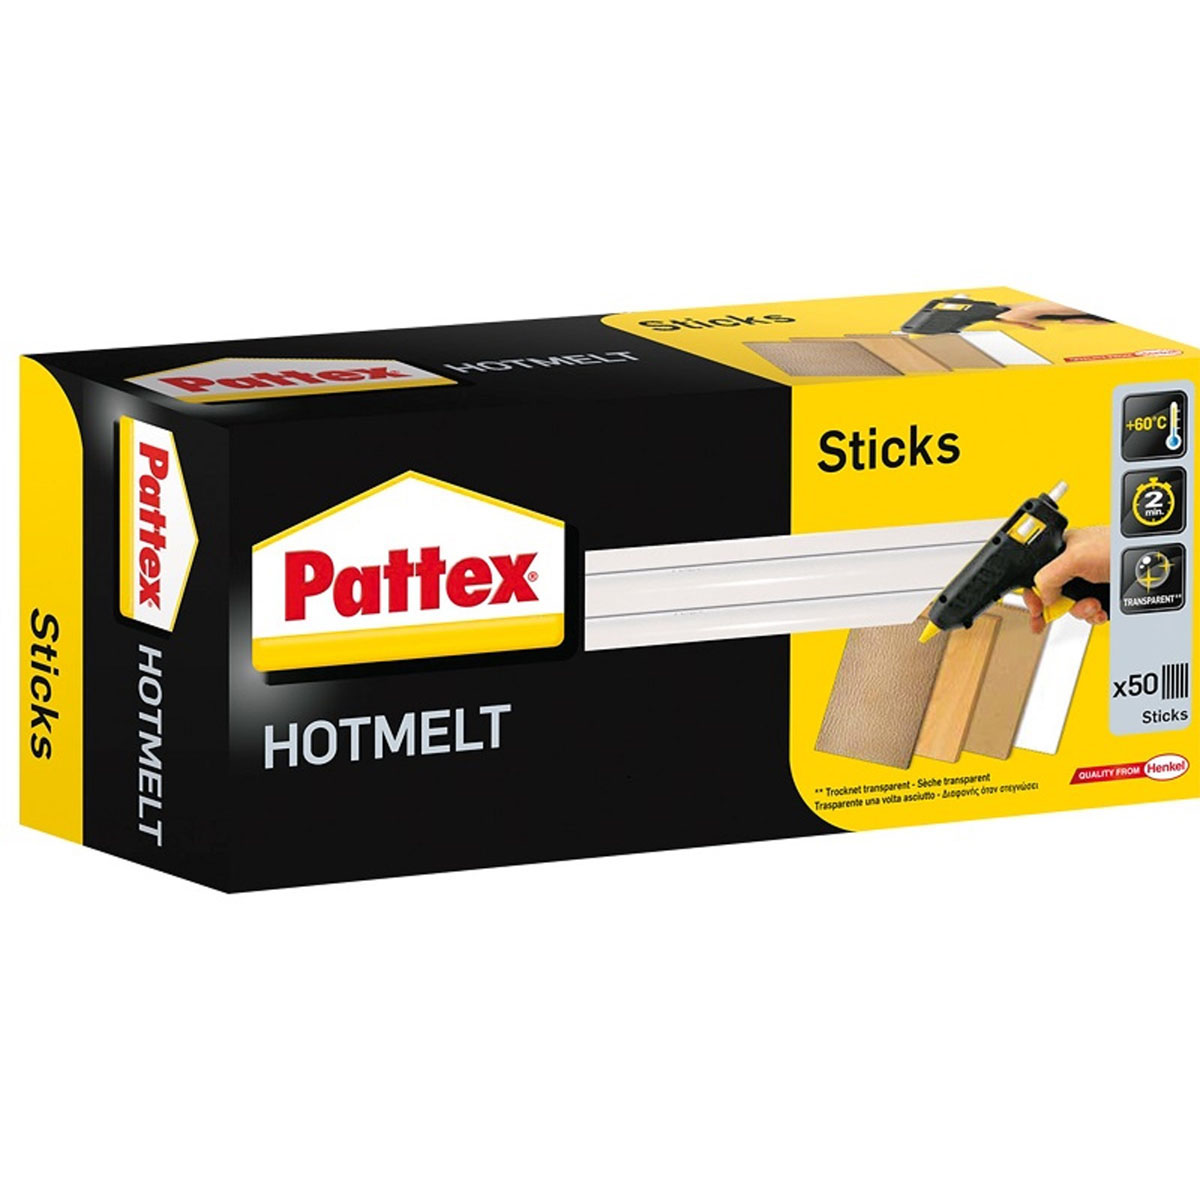 PATTEX 50x Hotmelt Sticks Klebepistolen & transparent Zubehör